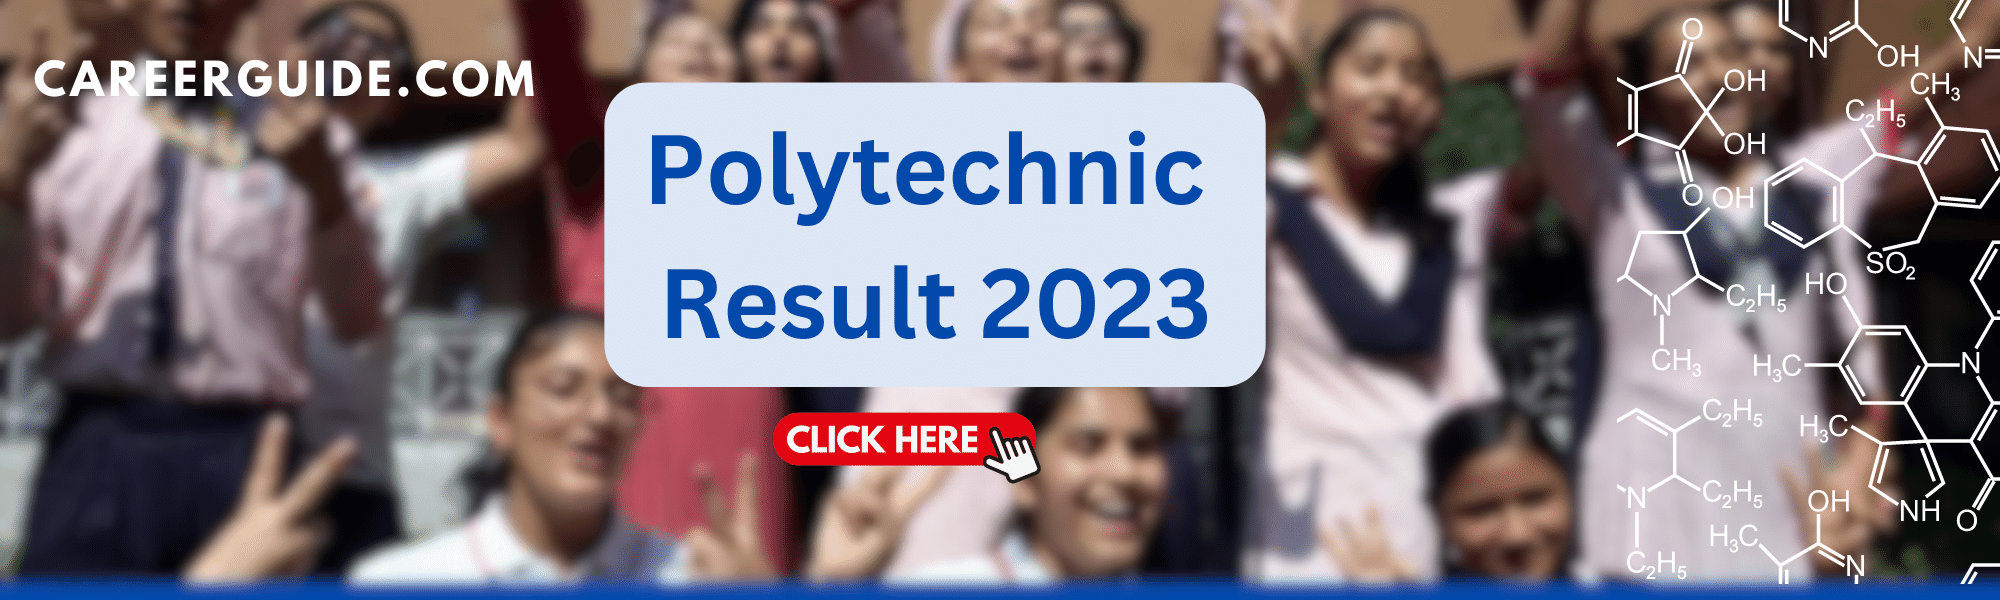 Polytechnic Result 2023 careerguide.com